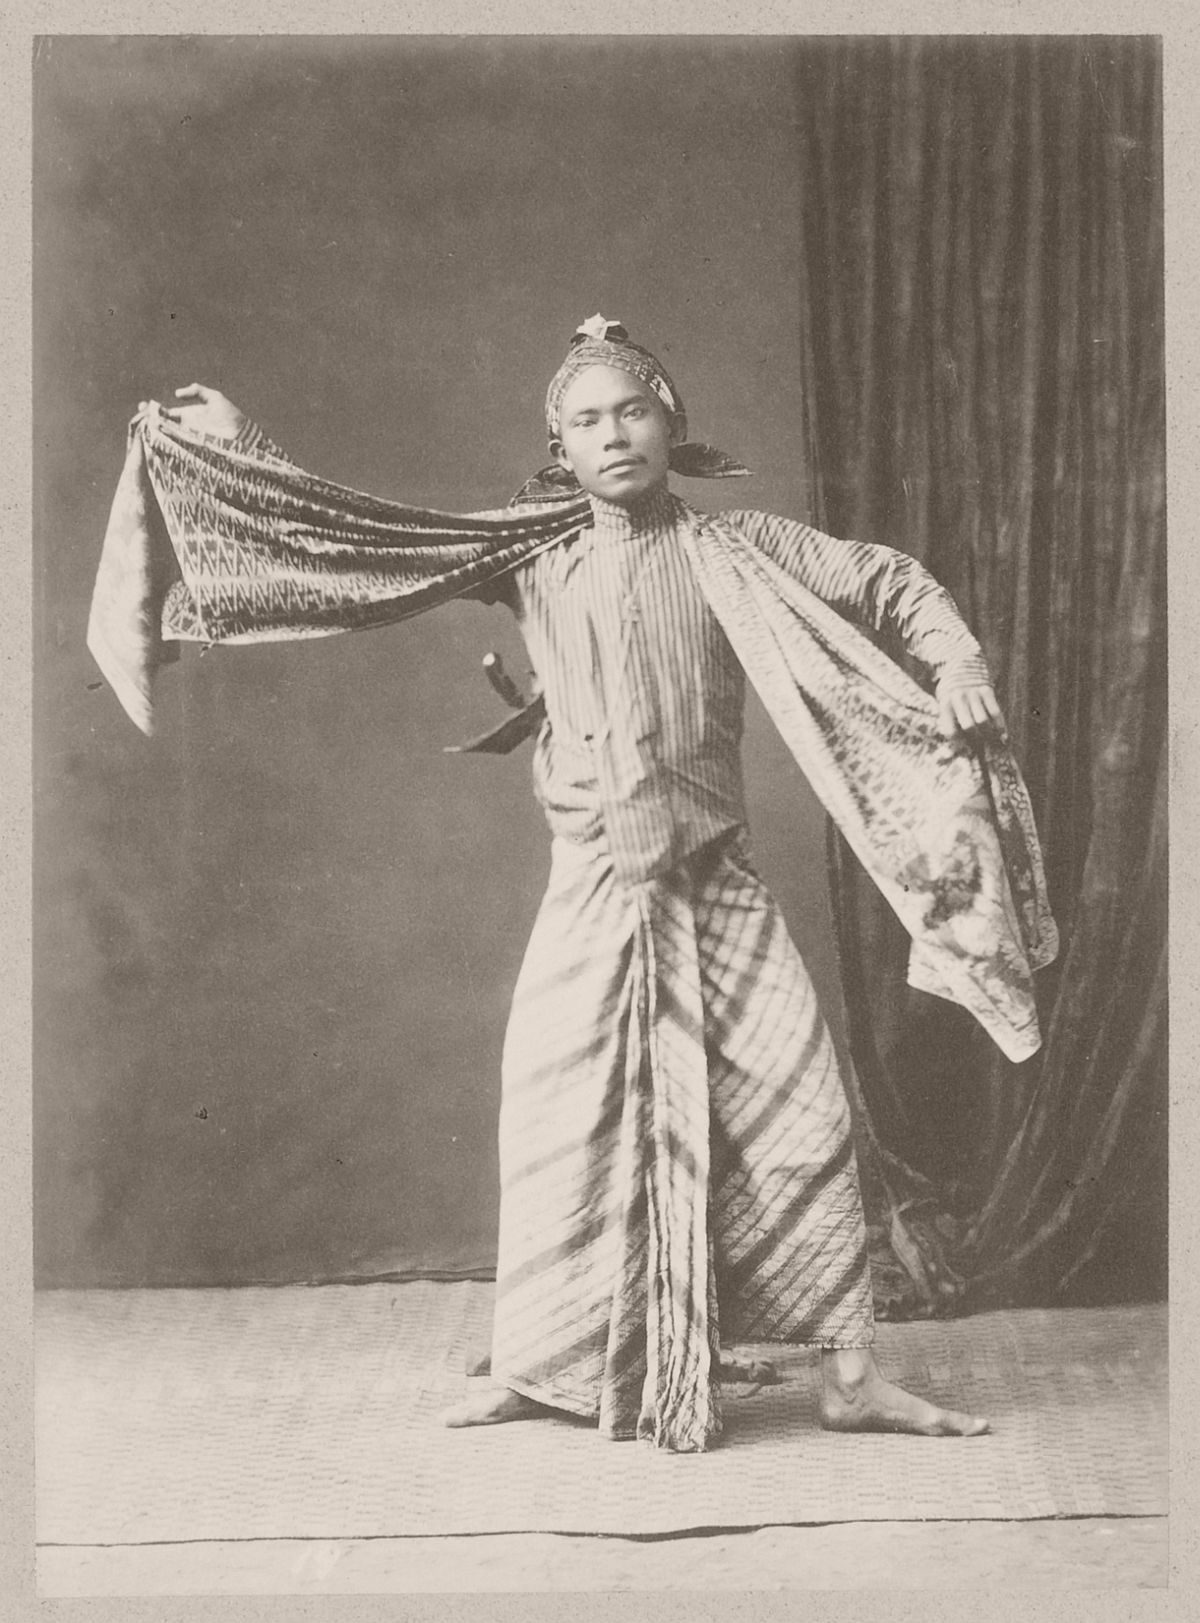 A dancer at Yogyakarta, circa 1900